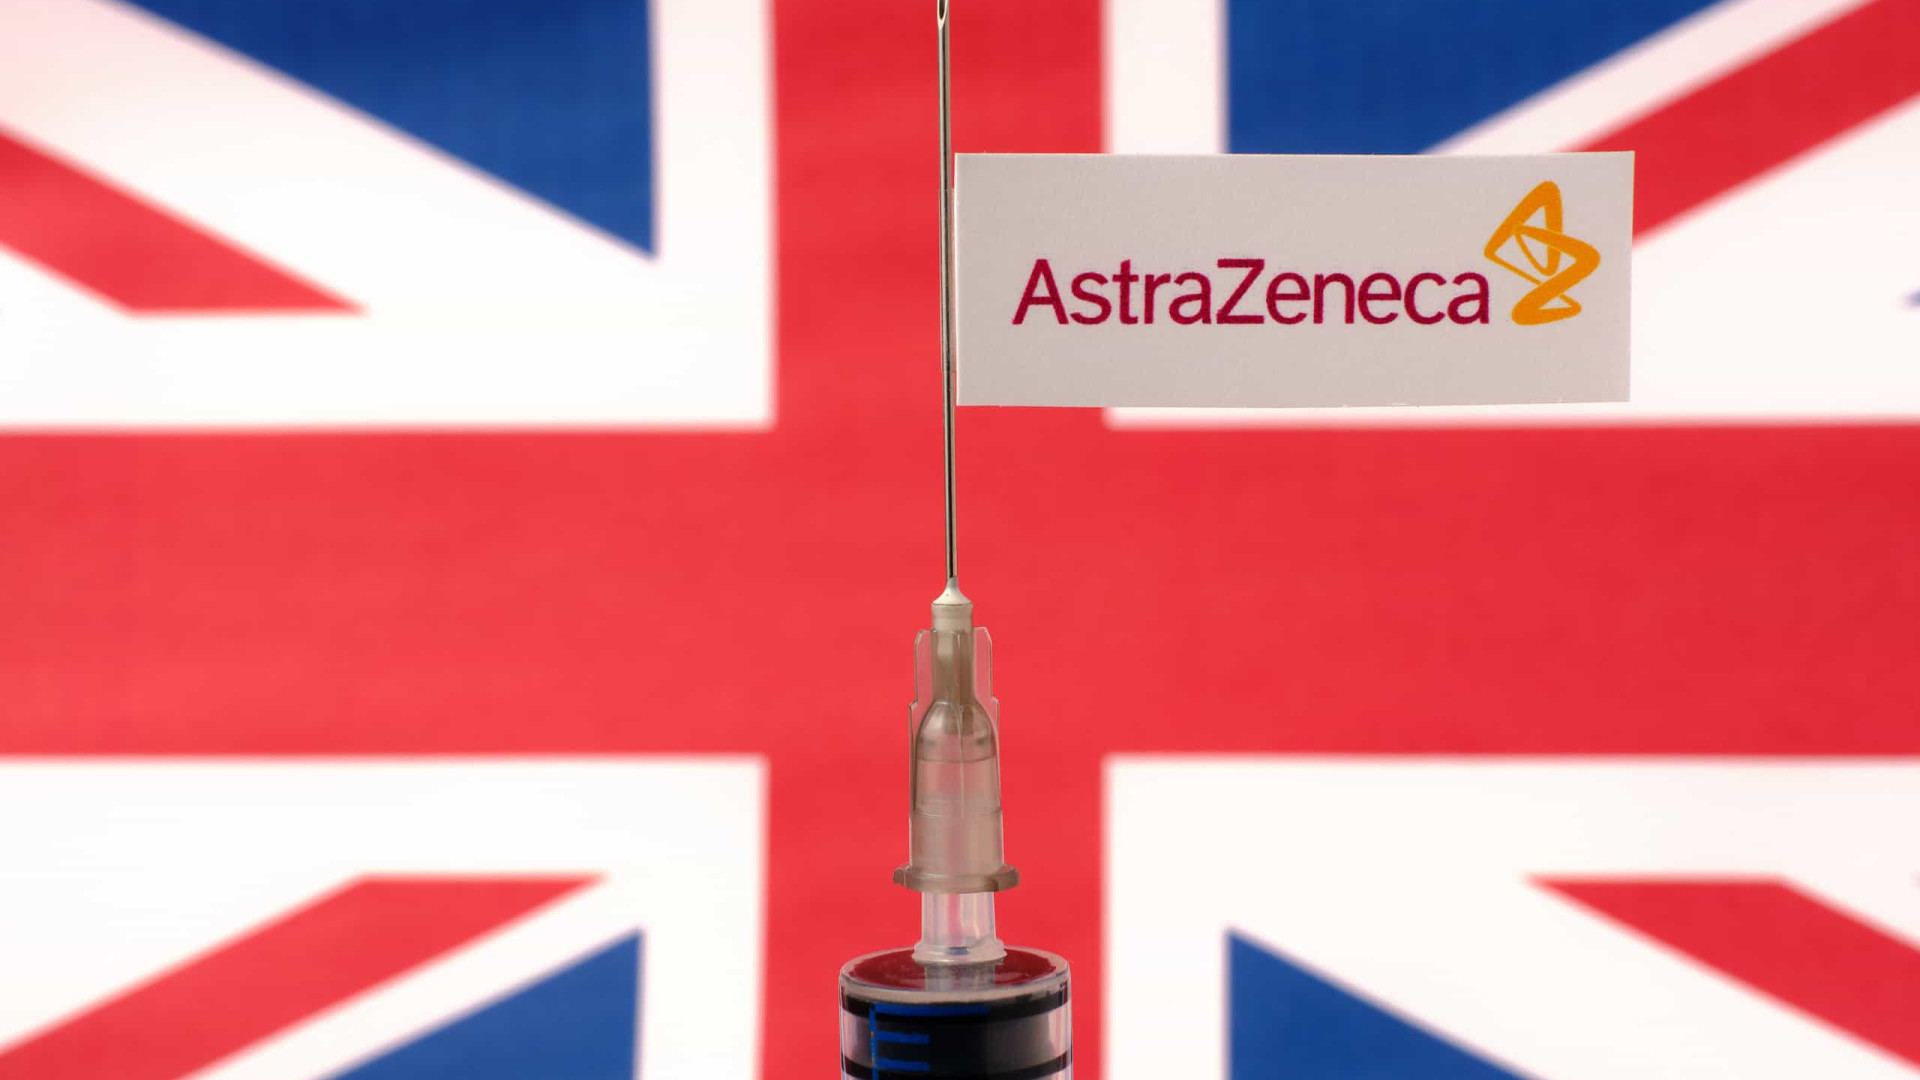 OMS deve decidir sobre uso emergencial da vacina da Astrazeneca nos próximos dias